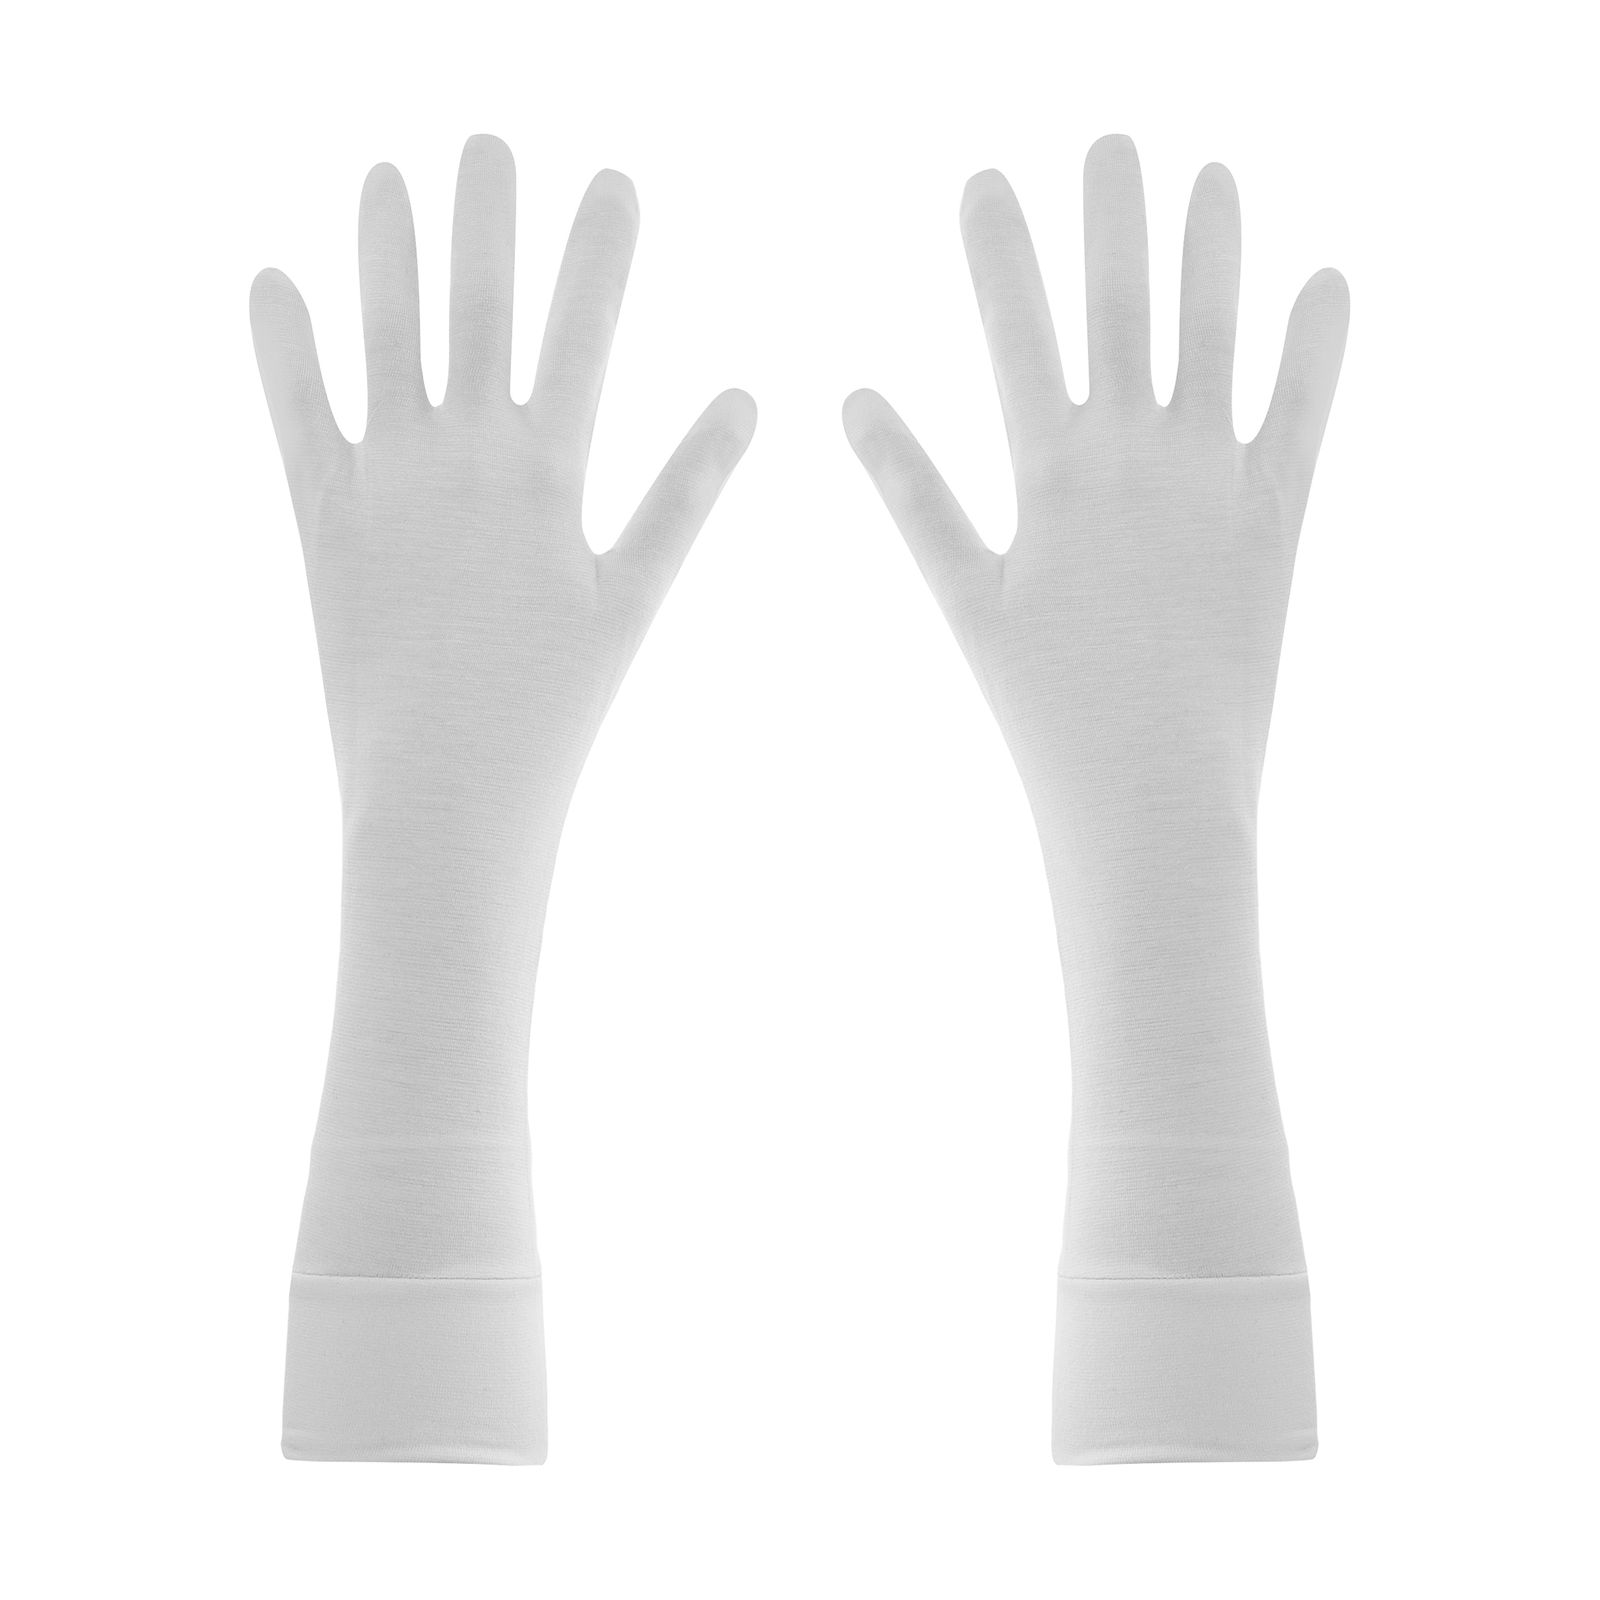 دستکش زنانه تادو کد 307 -  - 1